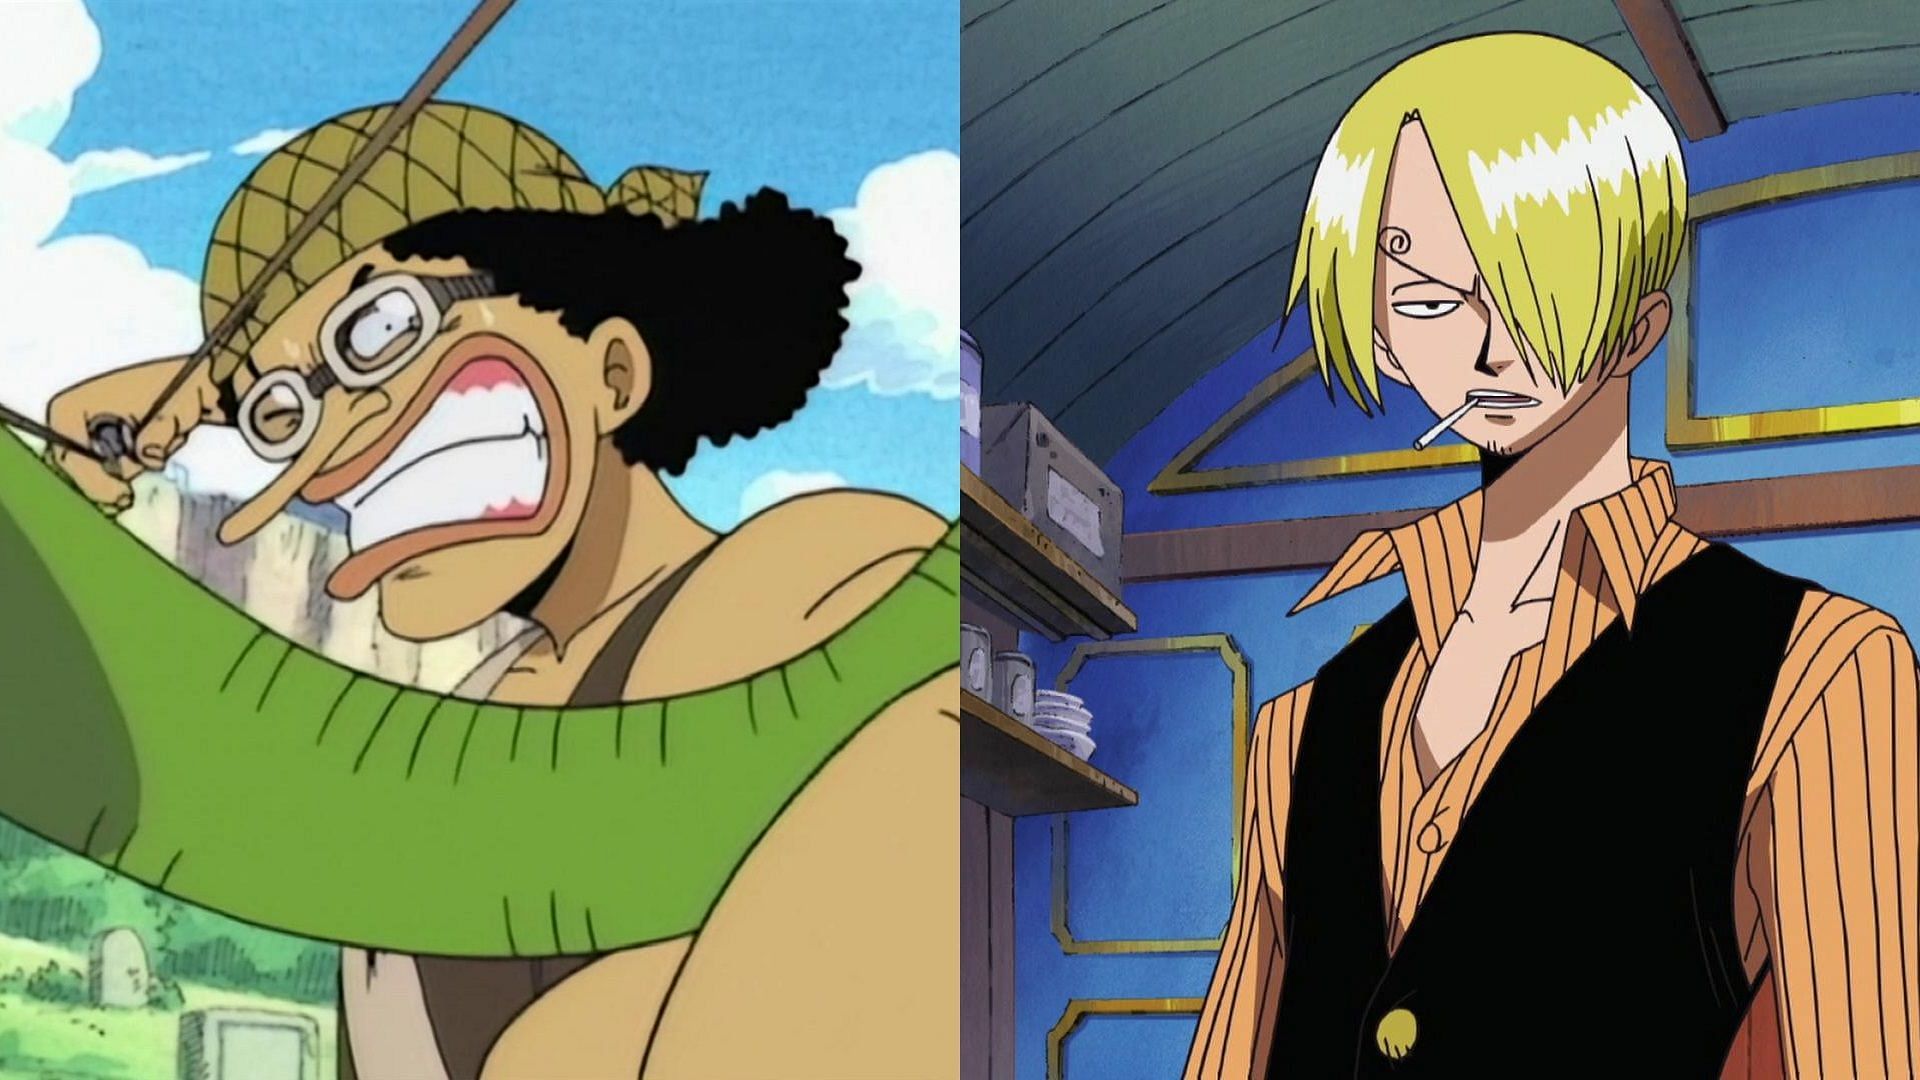 Les traits du visage typiques d'Usopp et de Sanji comme on le voit dans l'anime (Image via Toei Animation, One Piece)